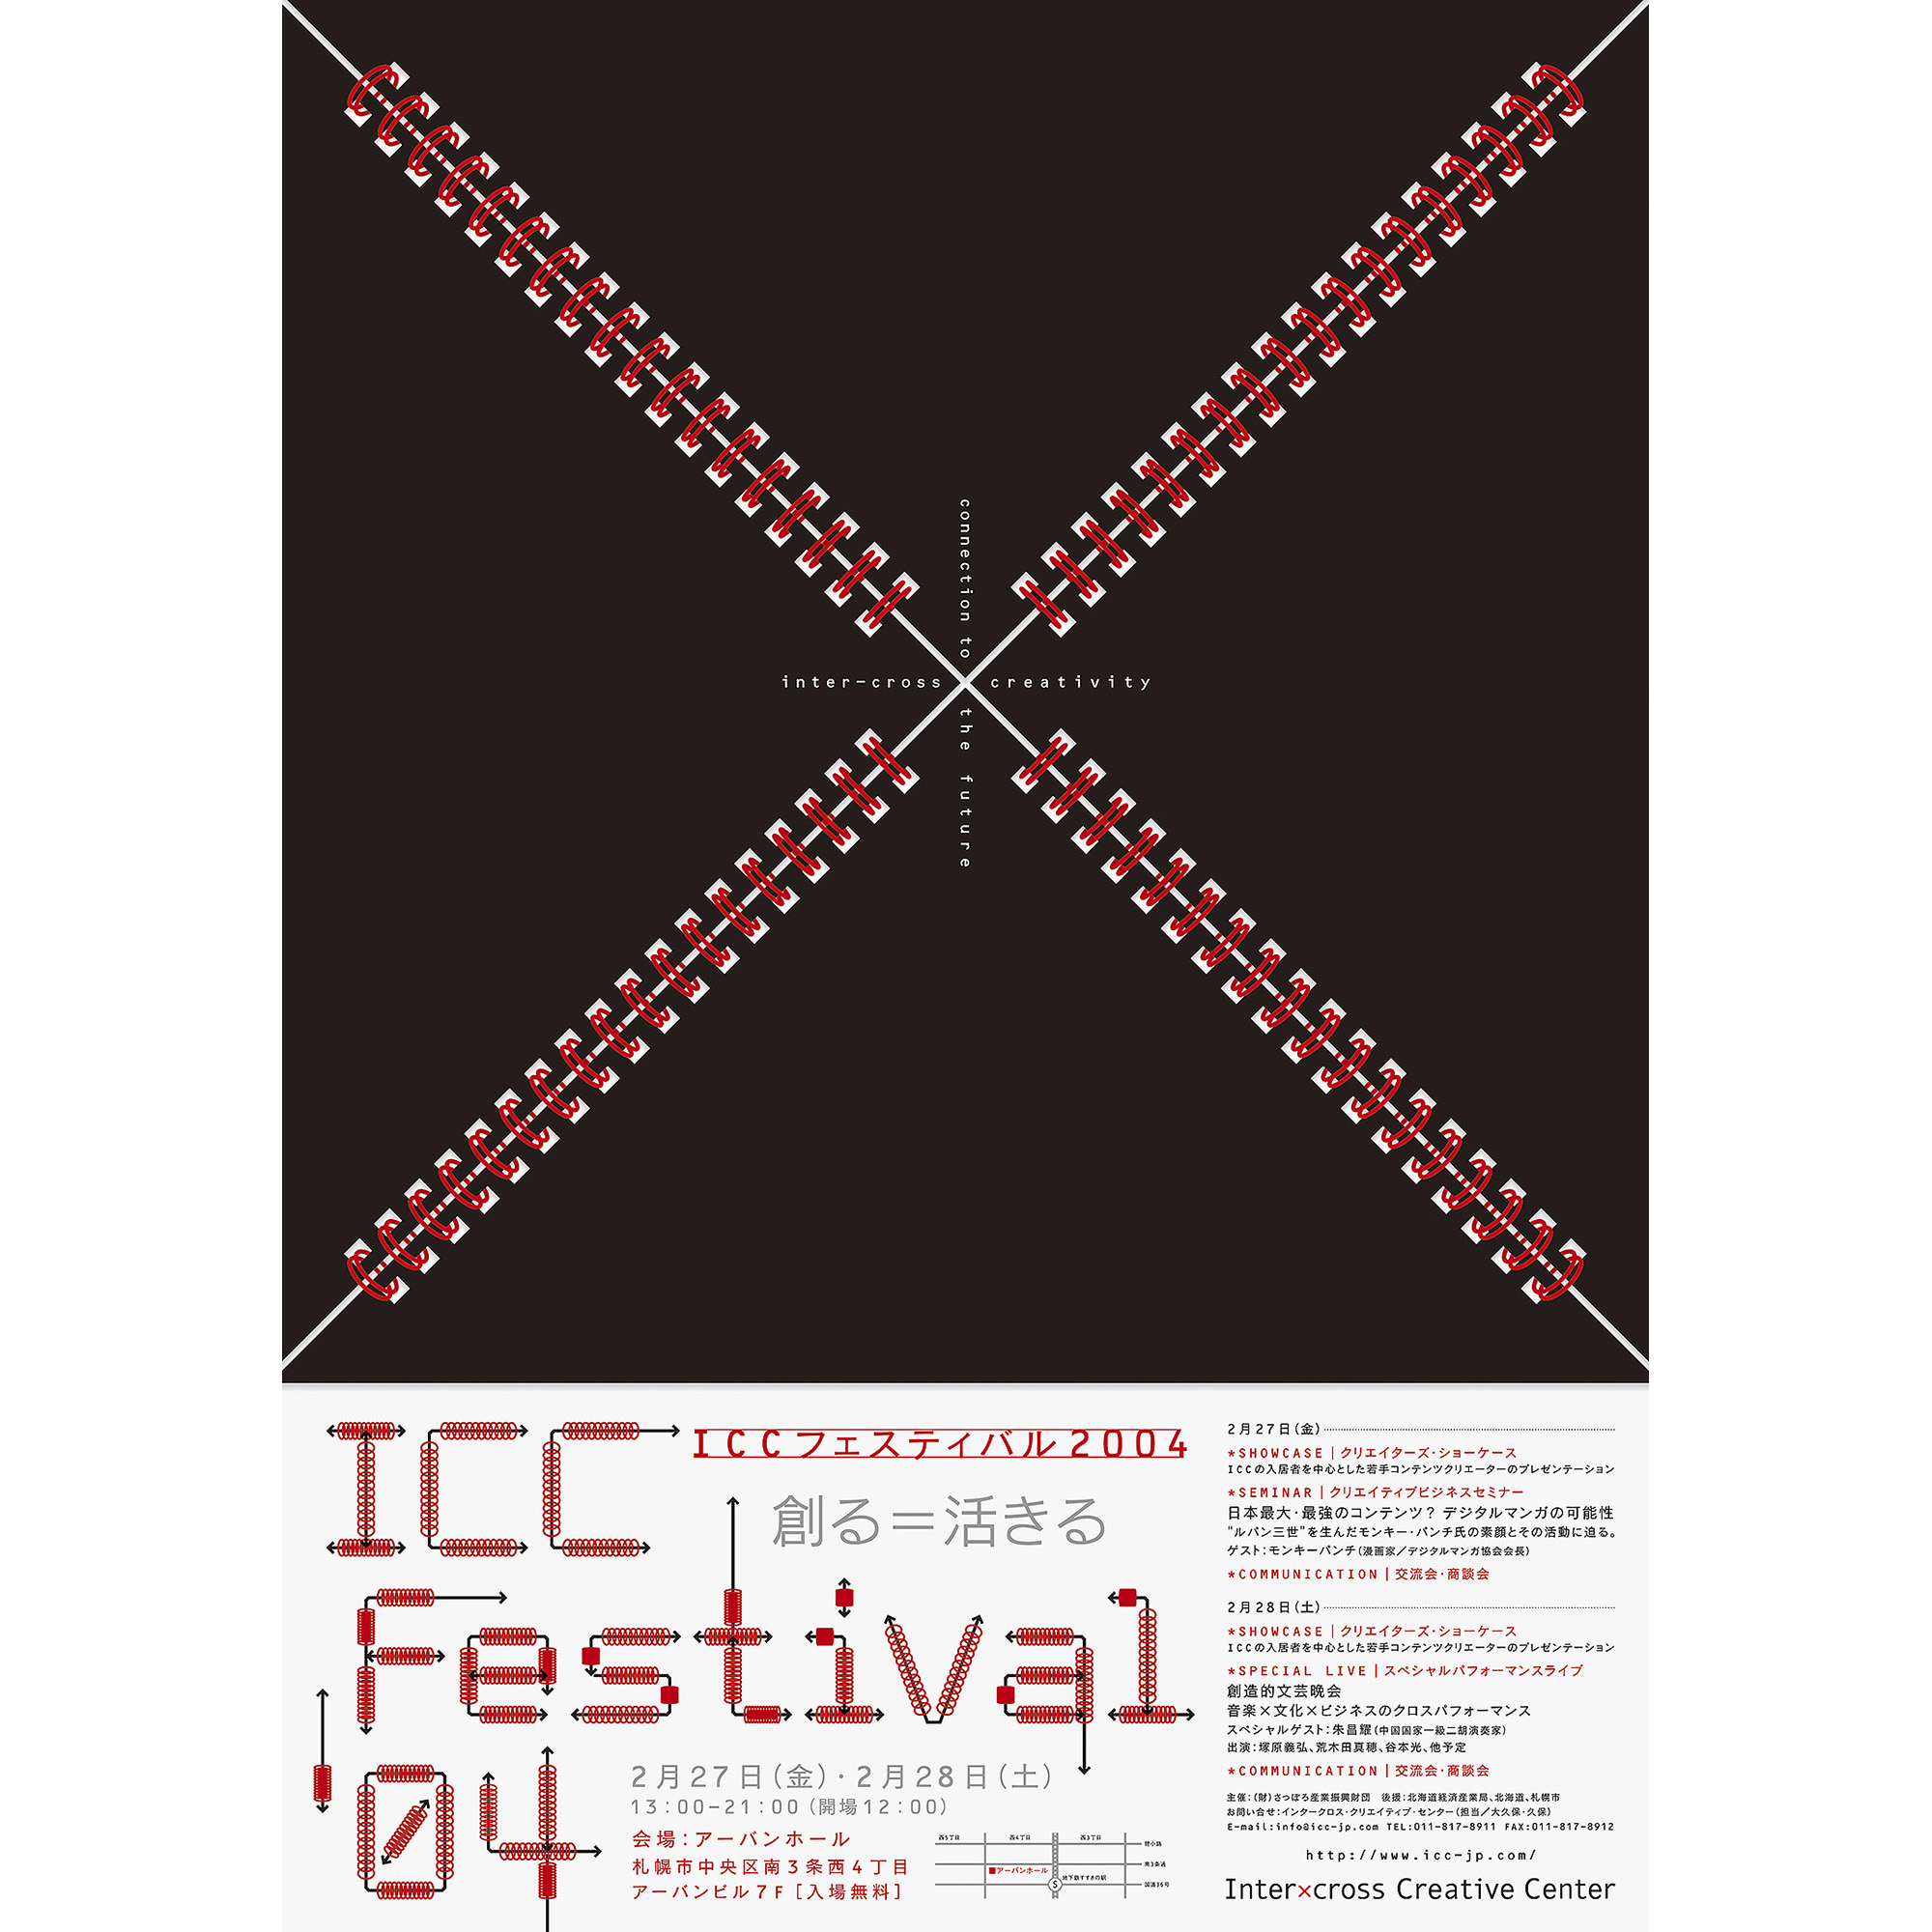 ICC Festival ’04